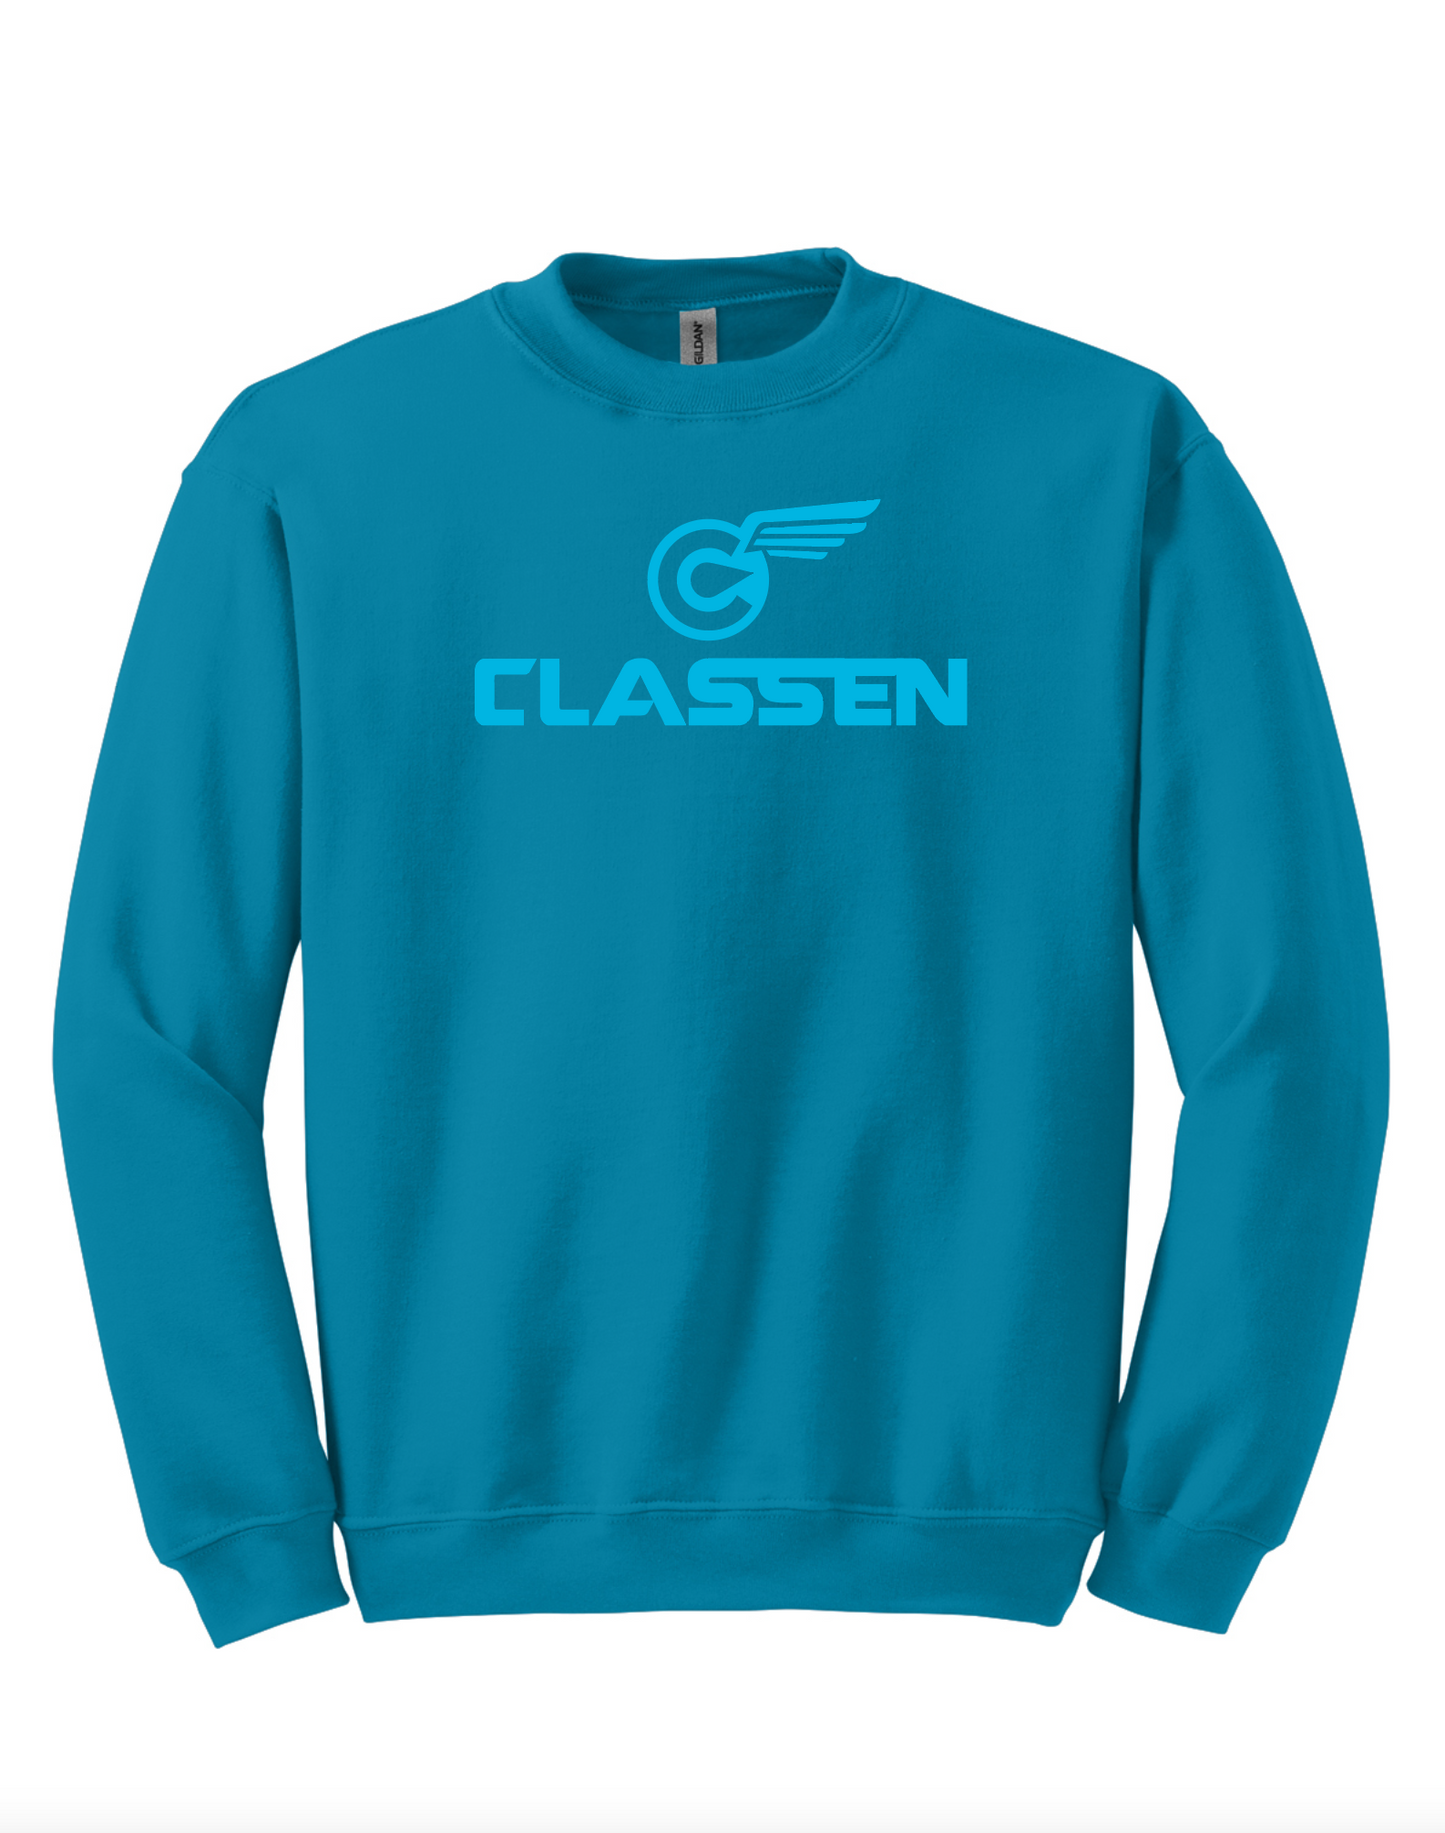 Classen Stanley Sweatshirt (various colors options)